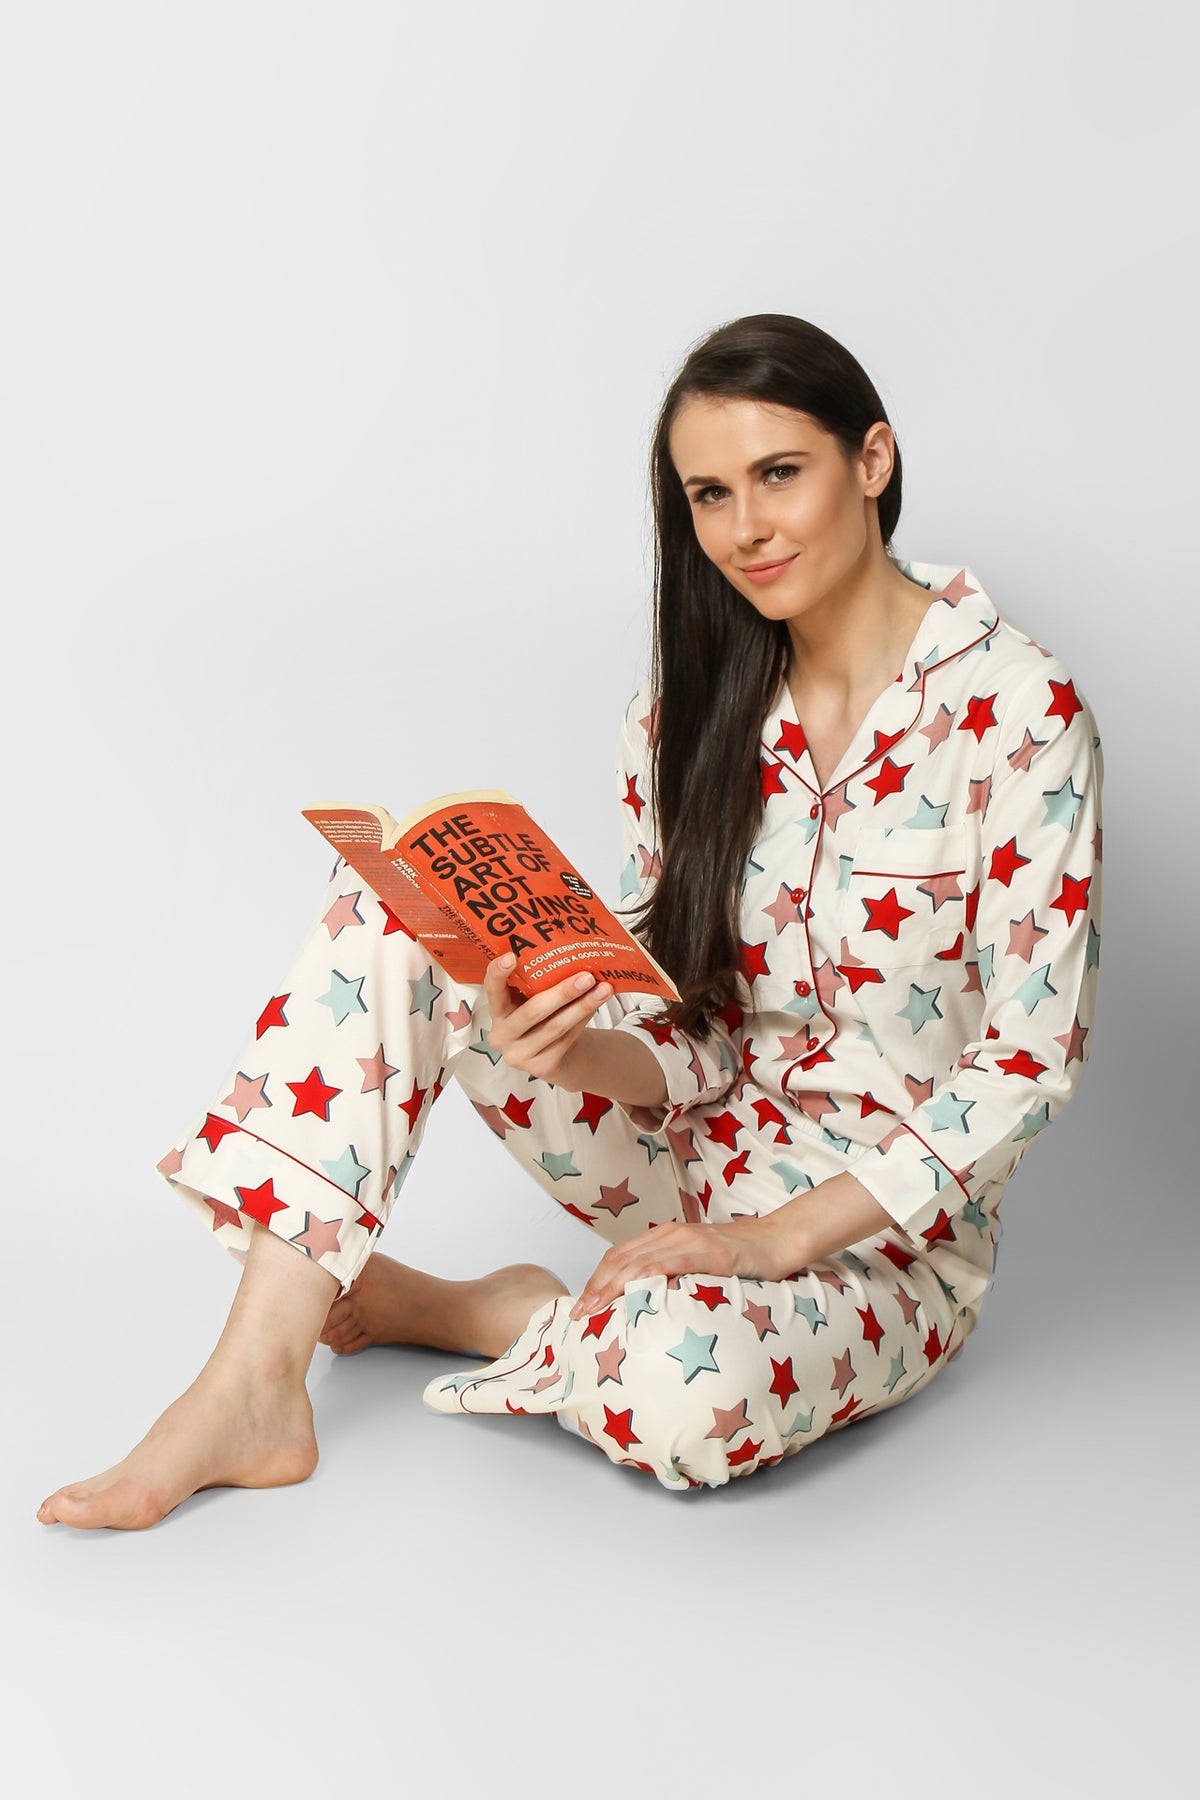 Star of Wonder Pyjama Set